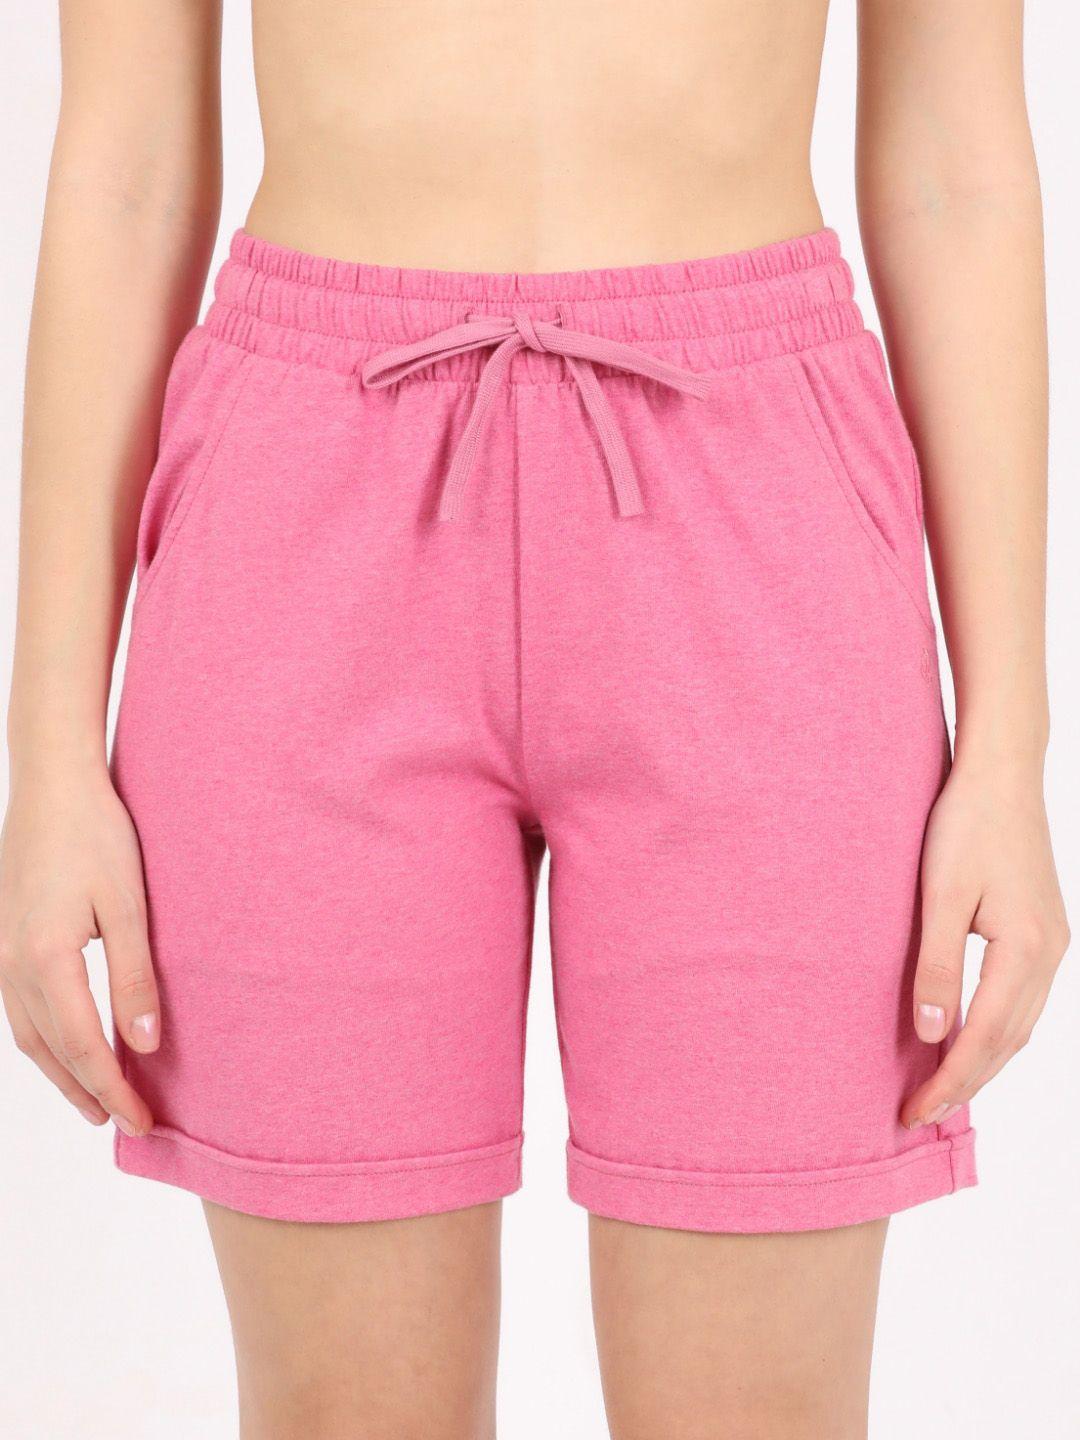 Jockey Women Pink Cotton Lounge Shorts